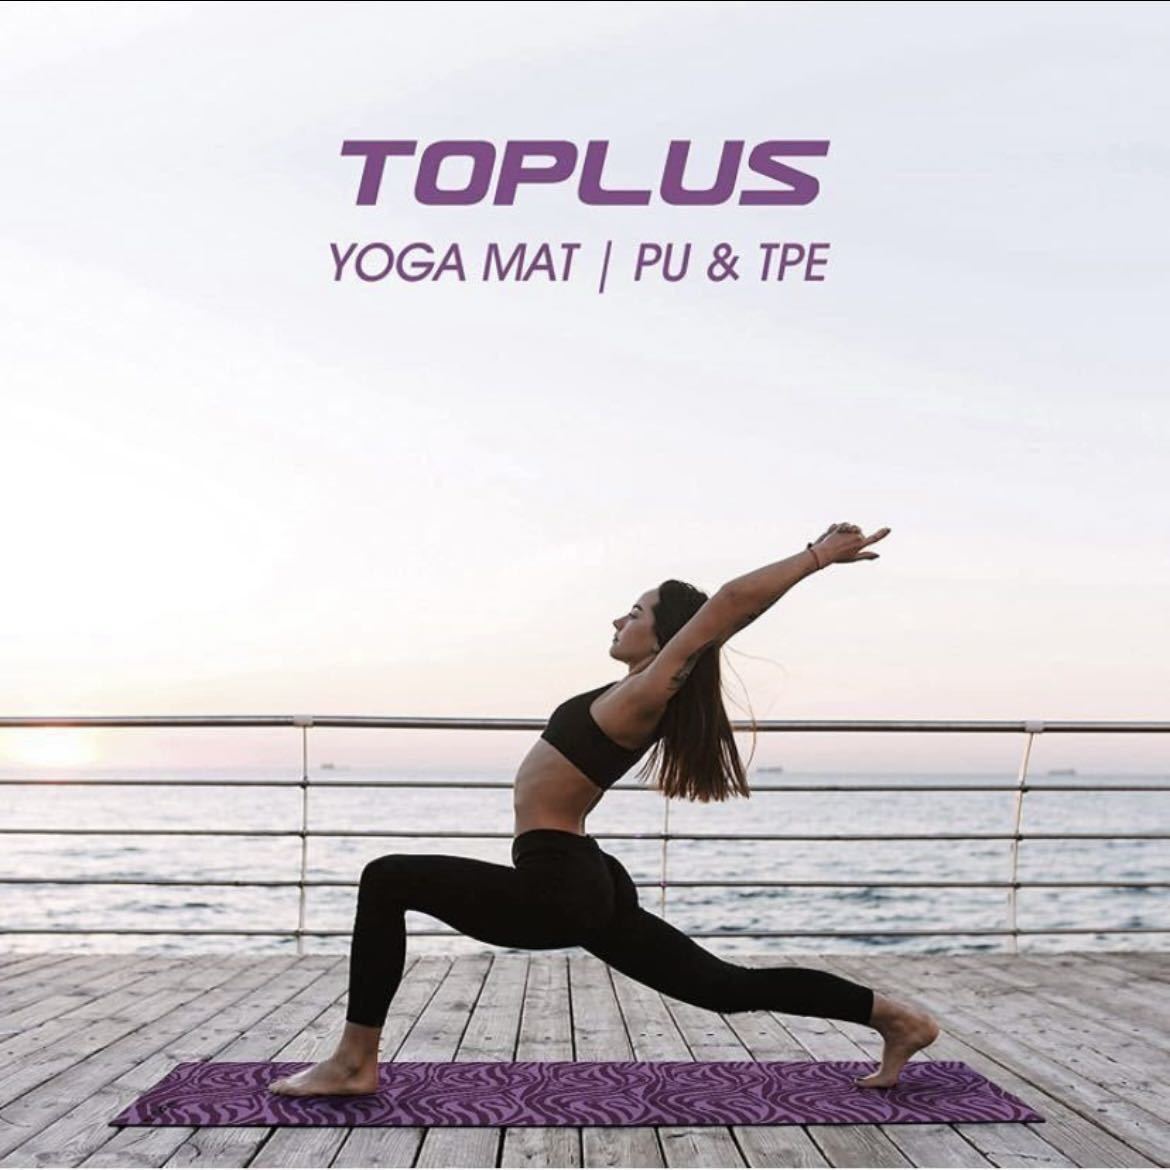 TOPLUS ヨガマット トレーニング/エクササイズ/ピラティスマット 多機能高級運動 PU+TPE素材 厚さ3mm 収納用ストラップ付き 紫 パープル